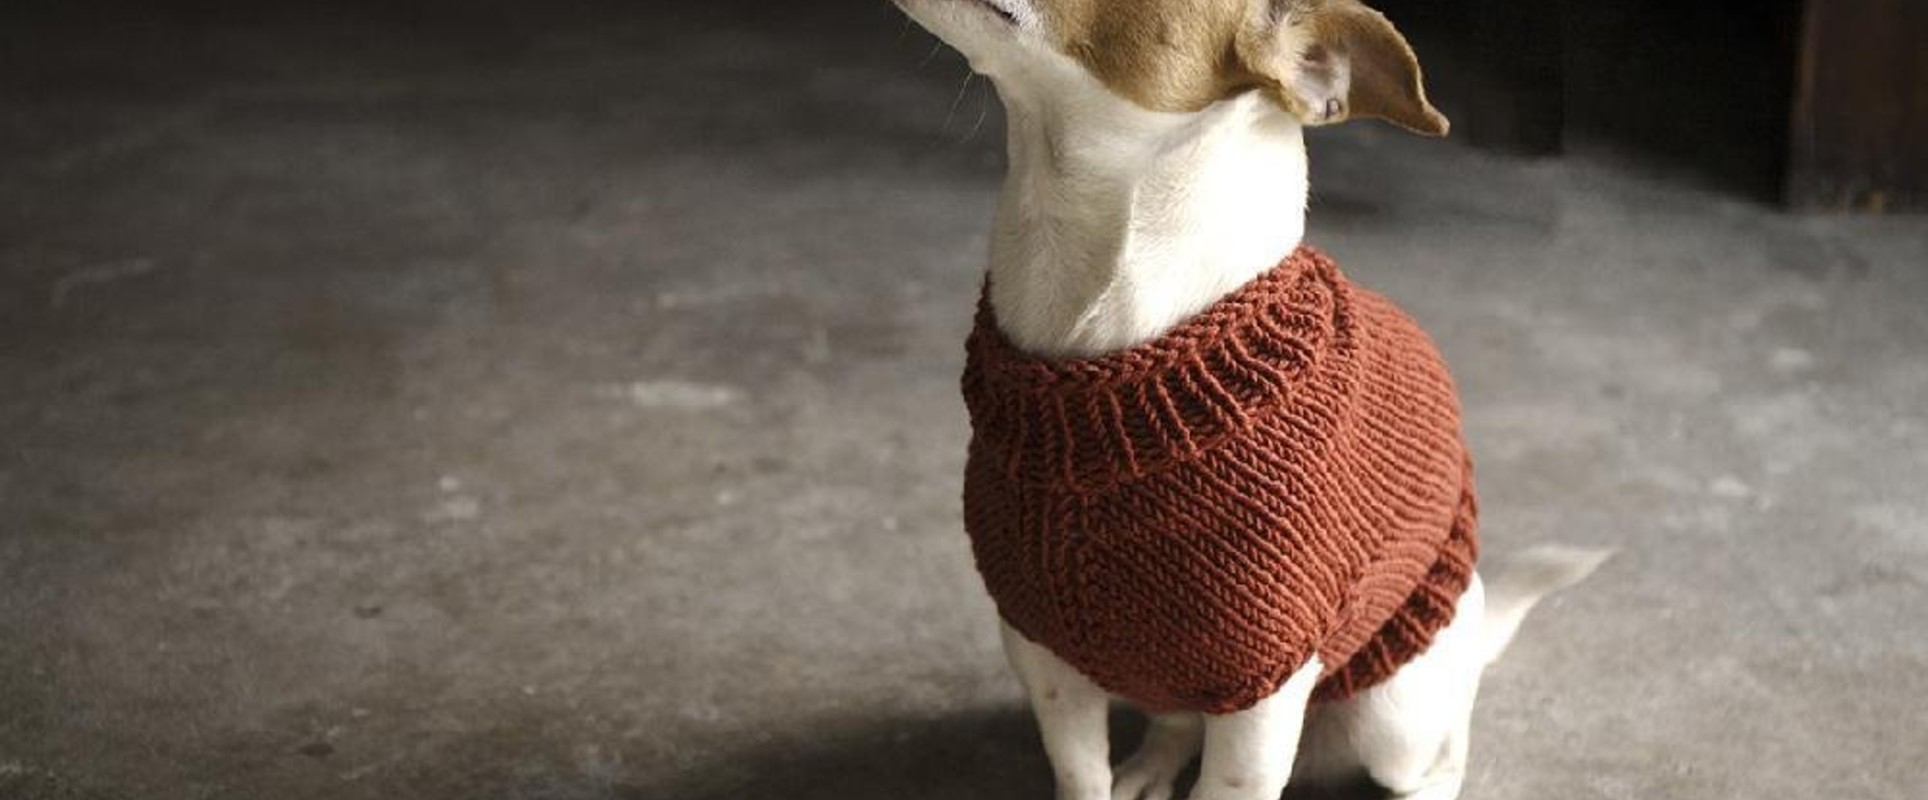 Dog Sweater Knitting Patterns Top 5 Free Dog Sweater Knitting Patterns Lovecrafts